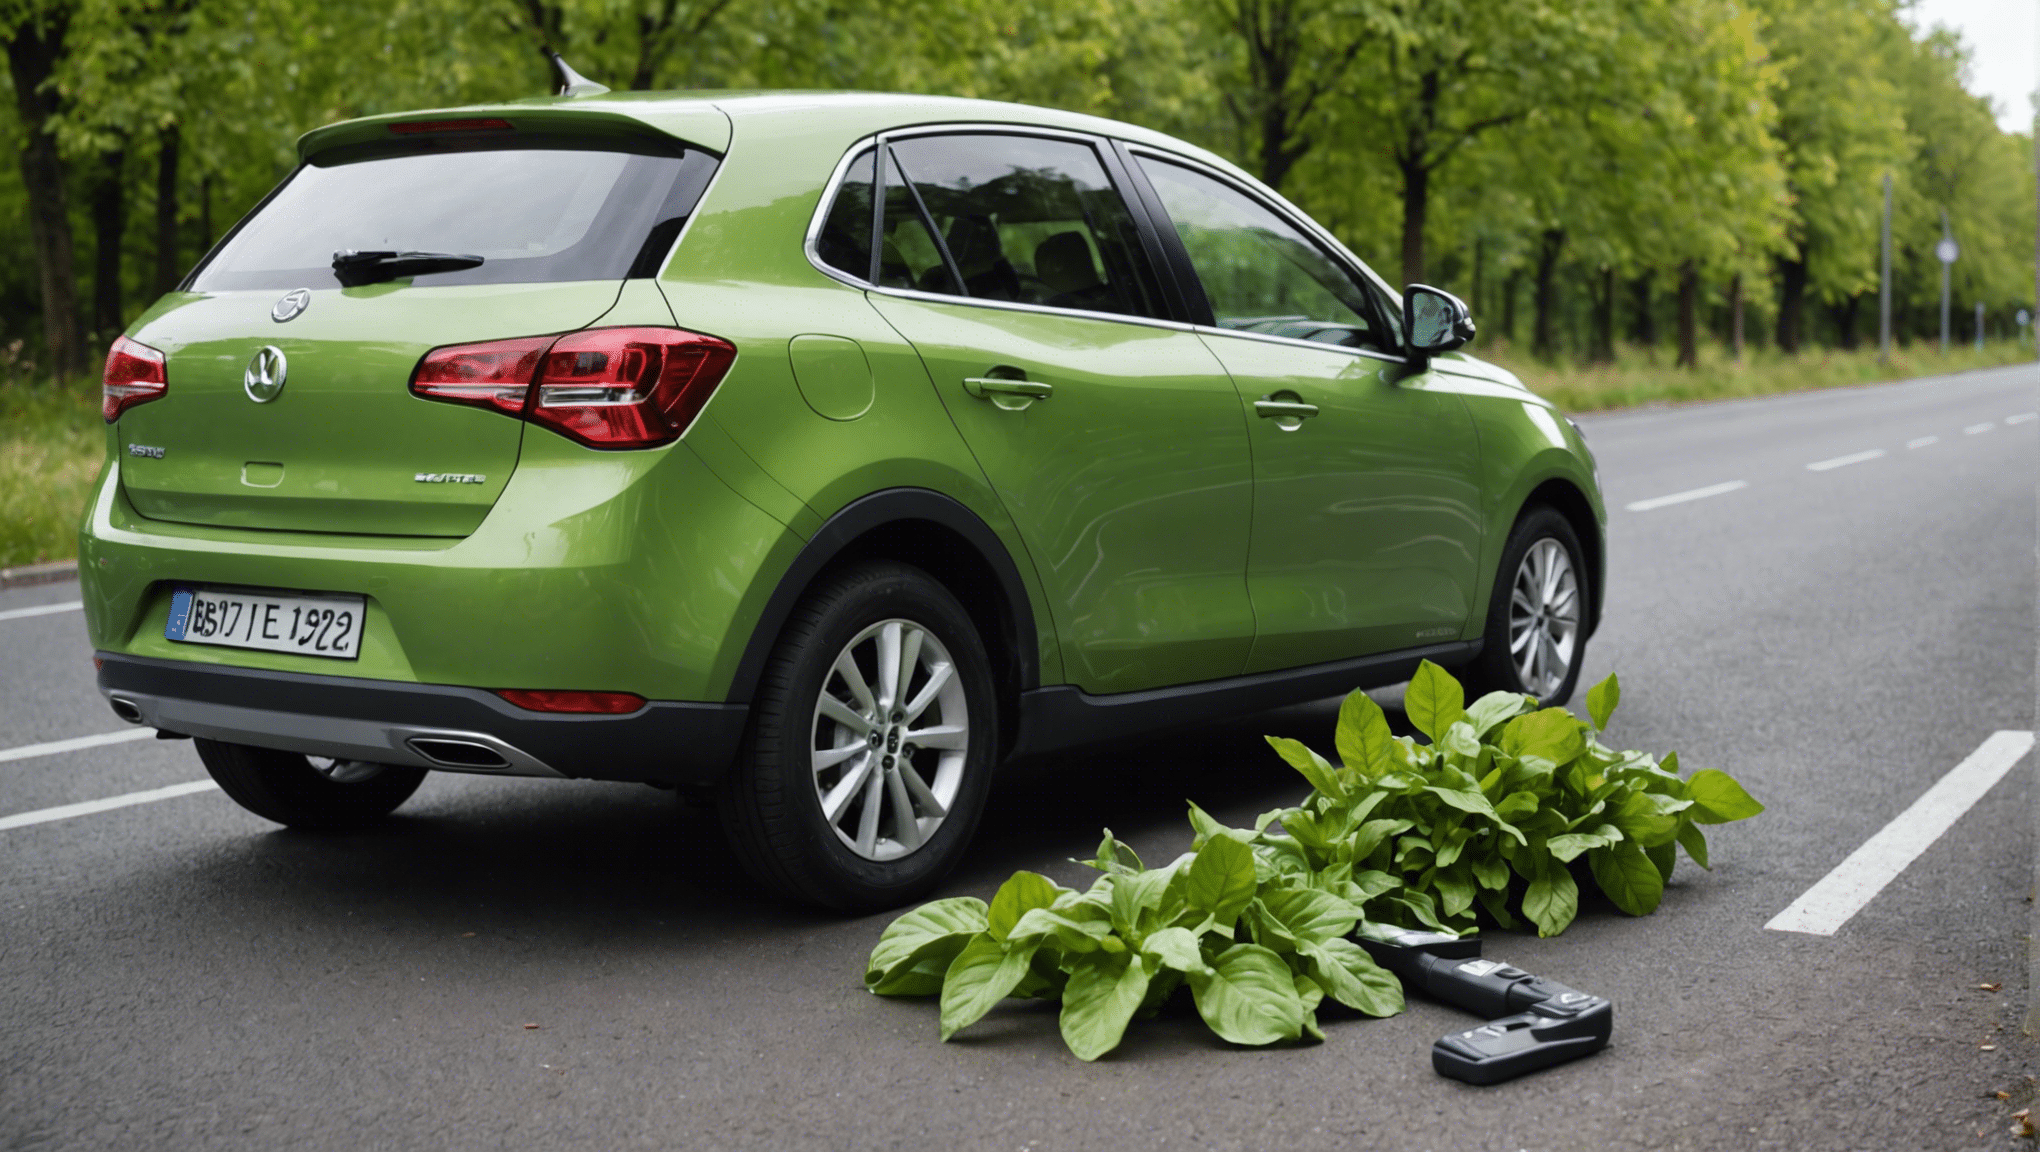 découvrez les meilleurs produits écologiques pour l'entretien de votre voiture. nettoyez votre véhicule tout en préservant l'environnement avec nos conseils pratiques.